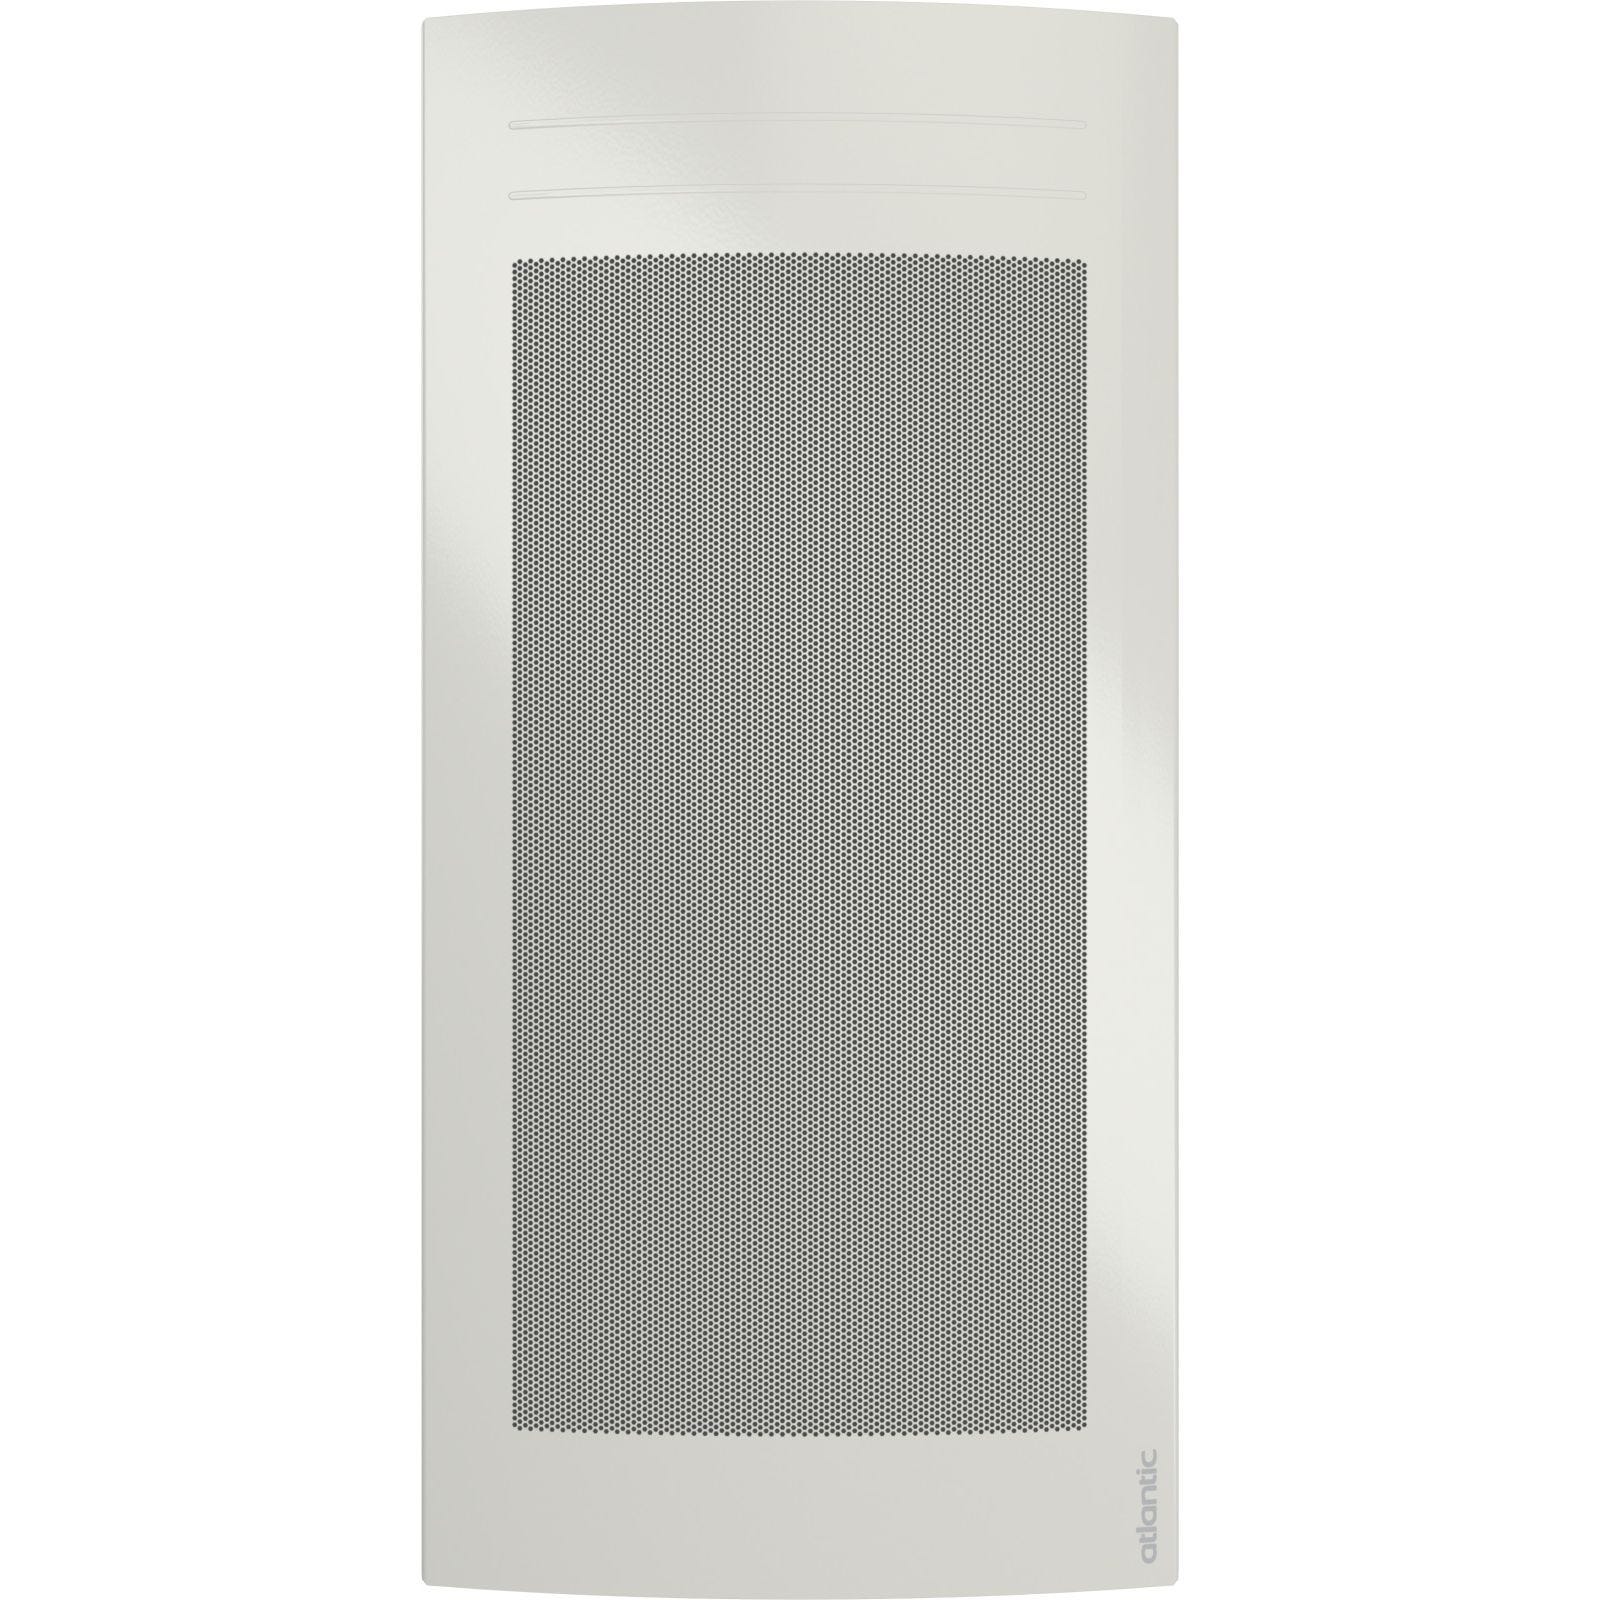 Radiateur électrique rayonnant digital SOLIUS vertical blanc 1500W - ATLANTIC - 423540 0